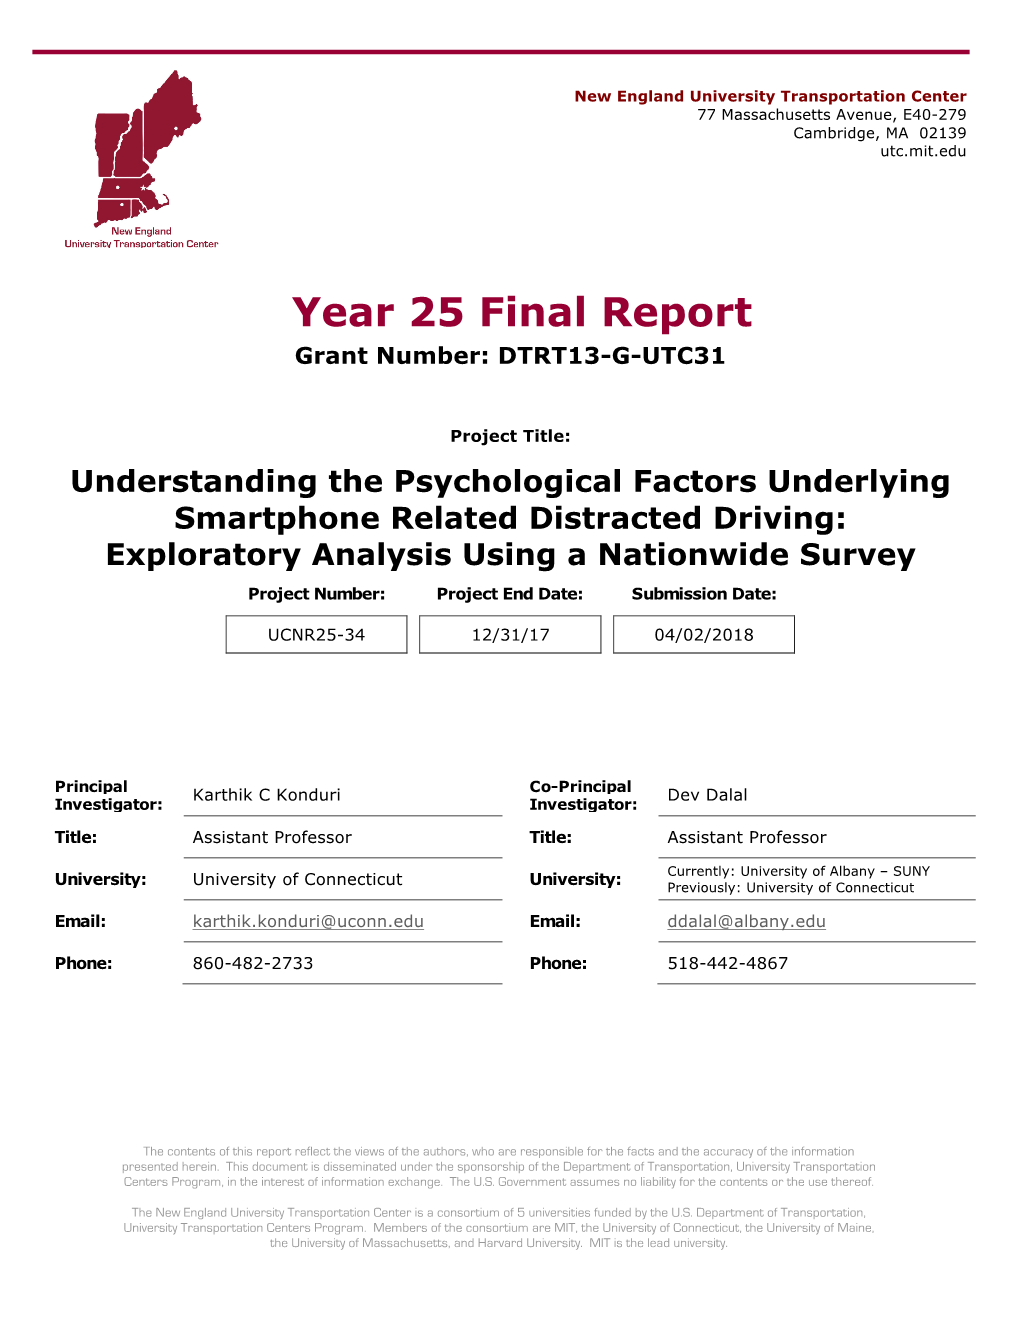 Understanding the Psychological Factors Underlying